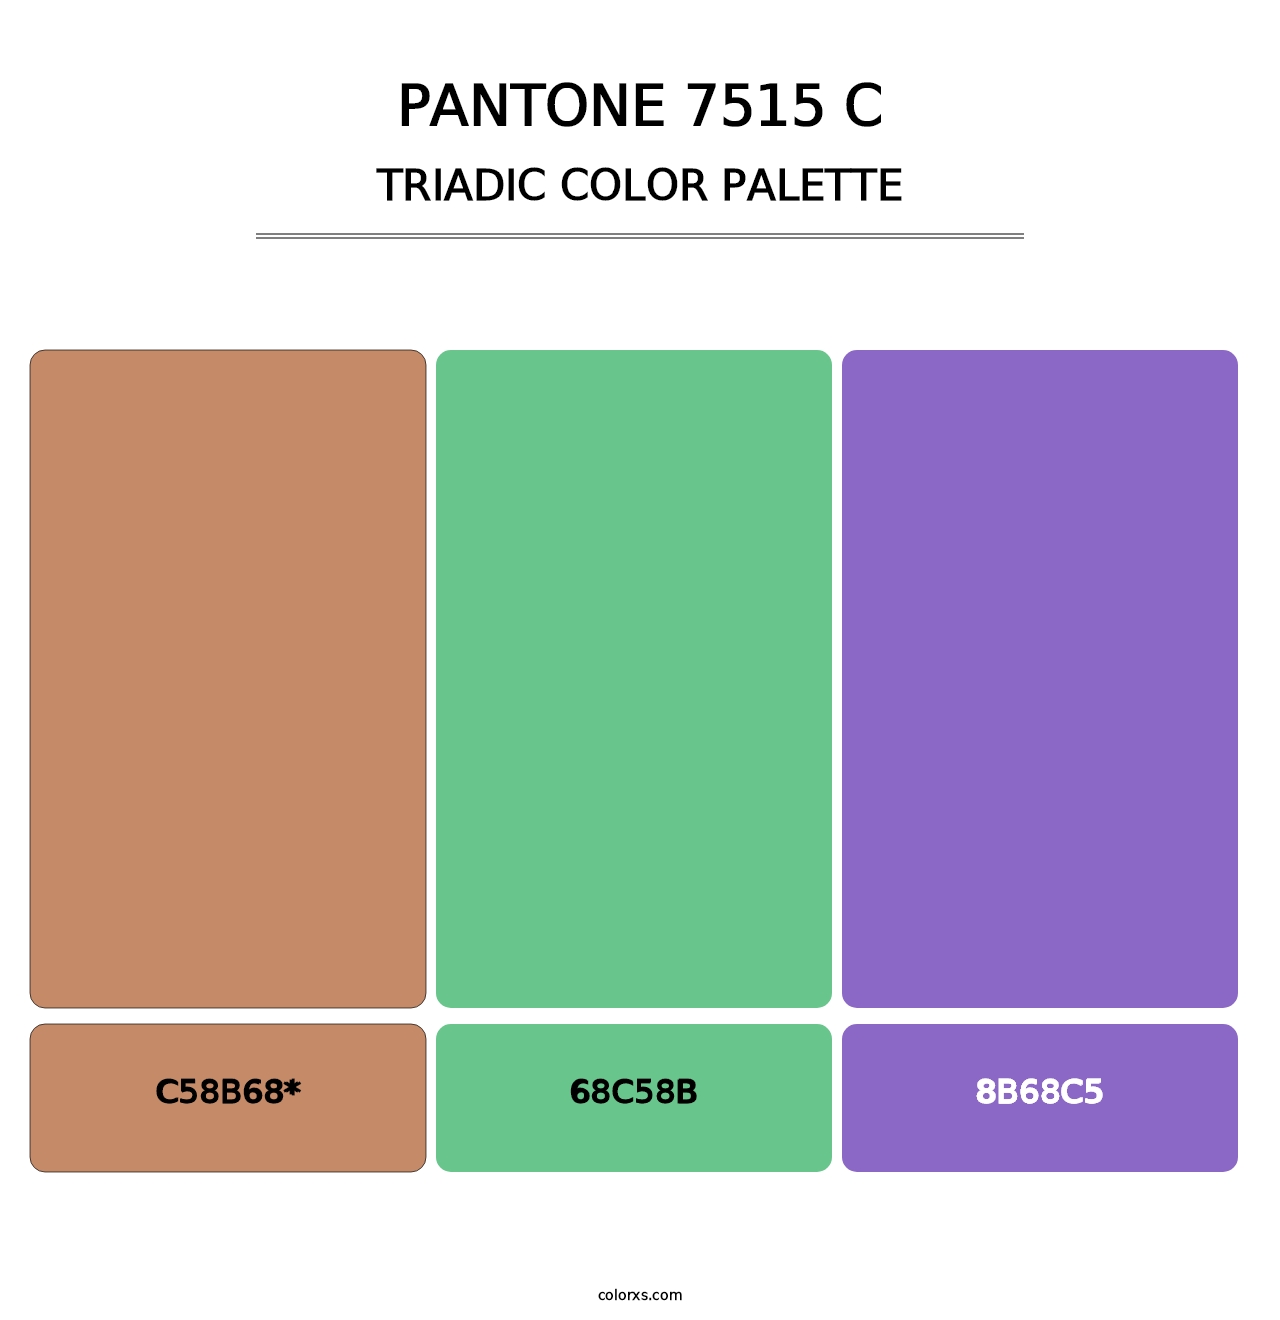 PANTONE 7515 C - Triadic Color Palette